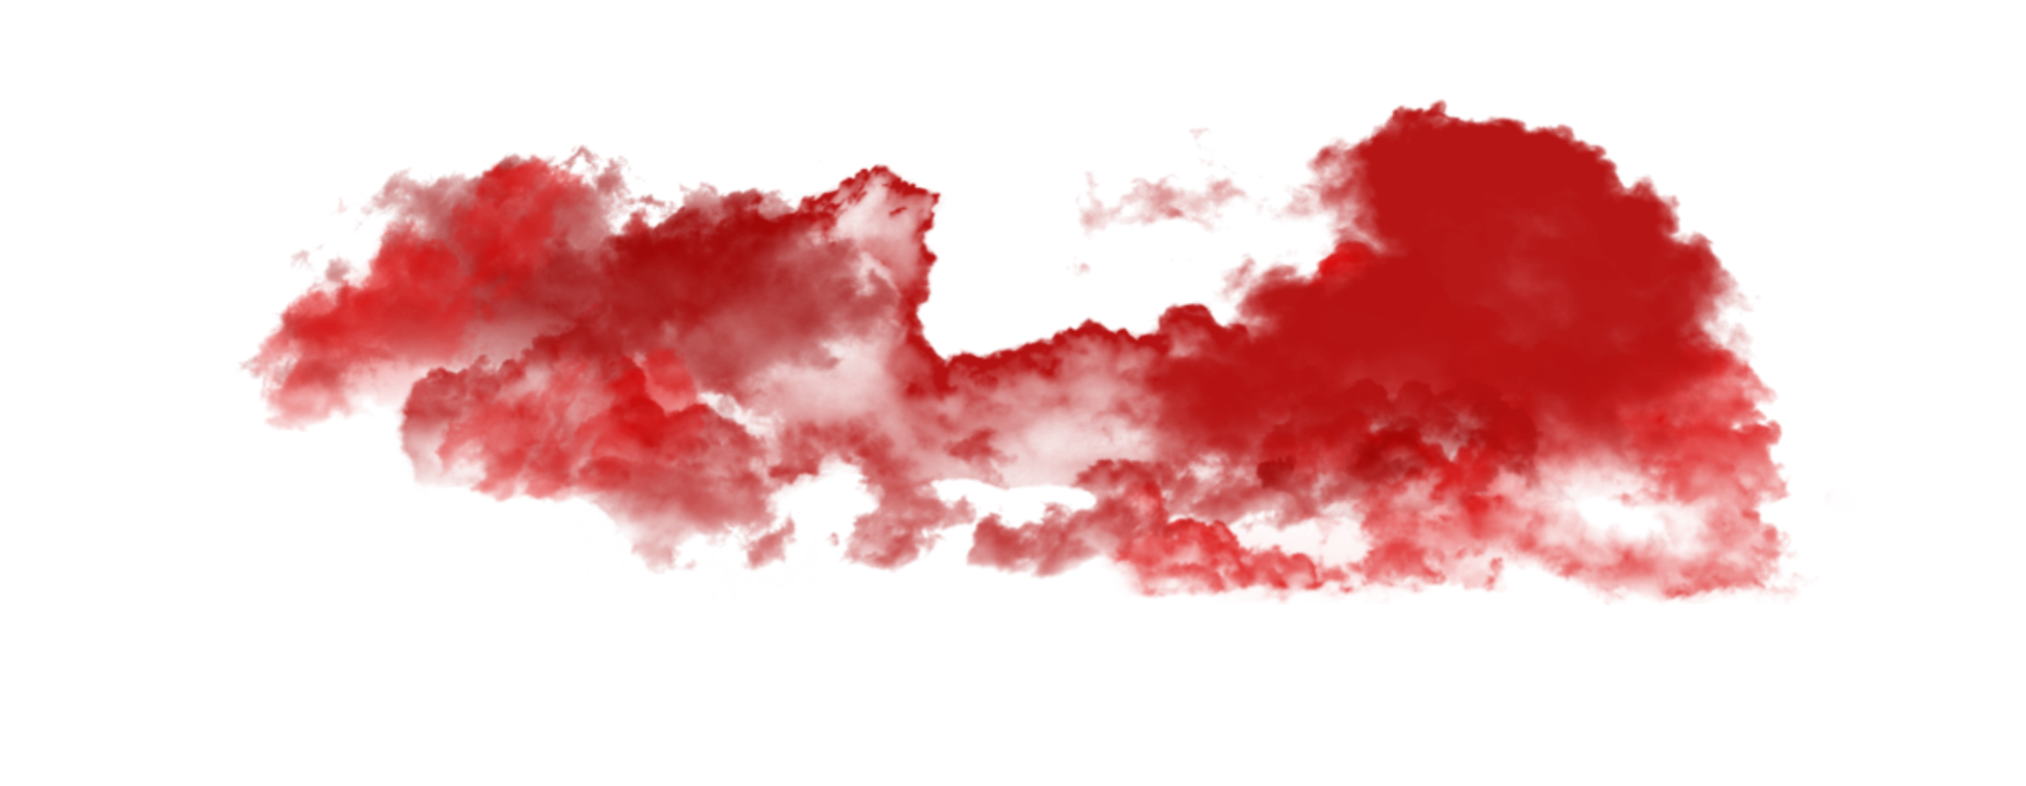 Red Smoke PNG Image